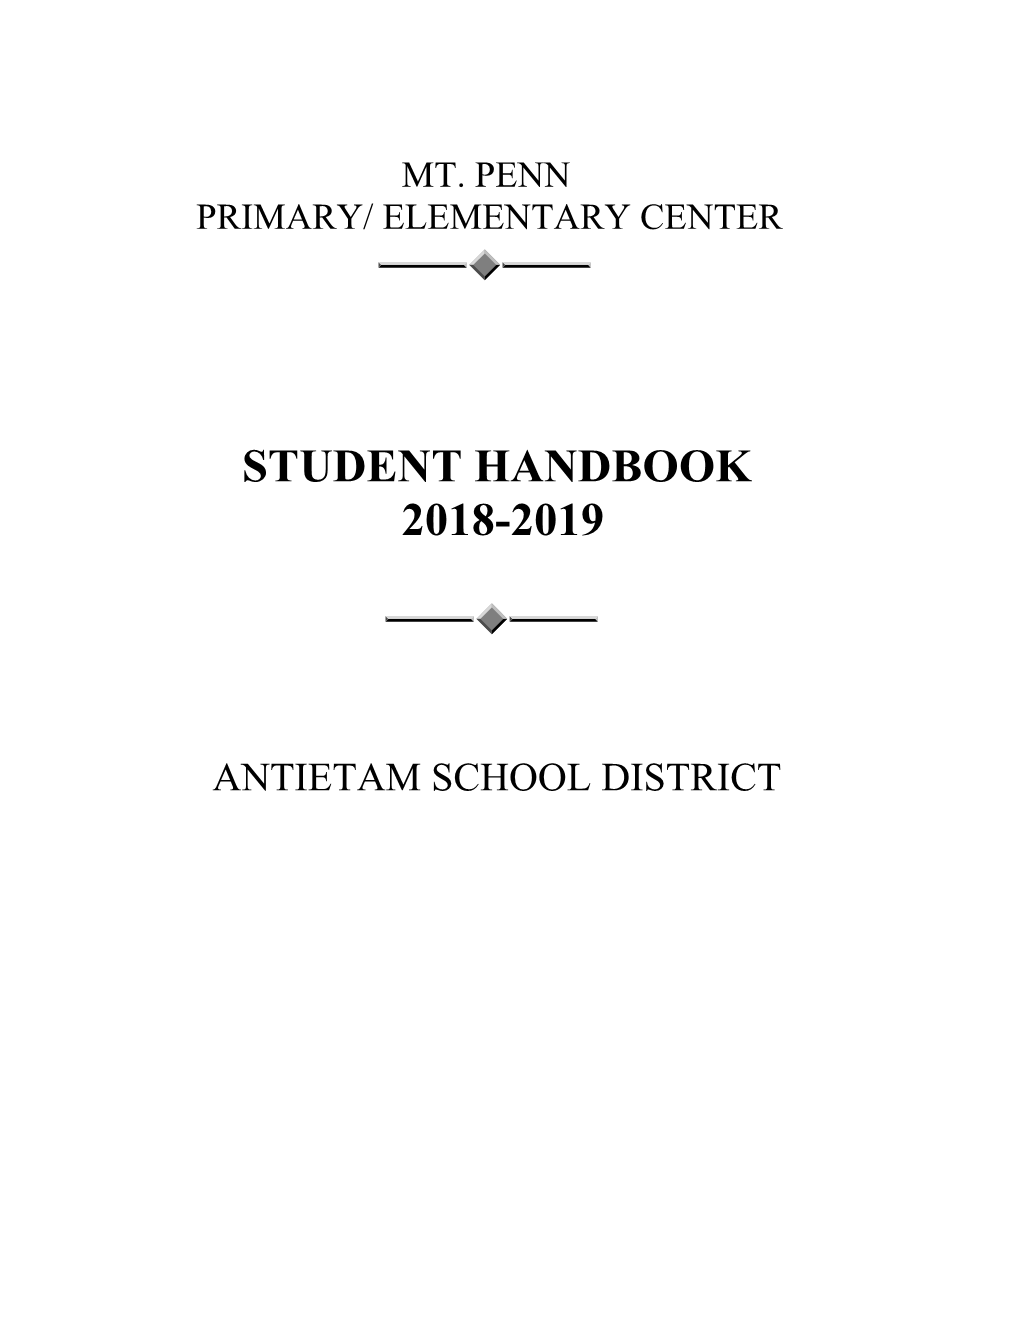 Student Handbook 2018-2019